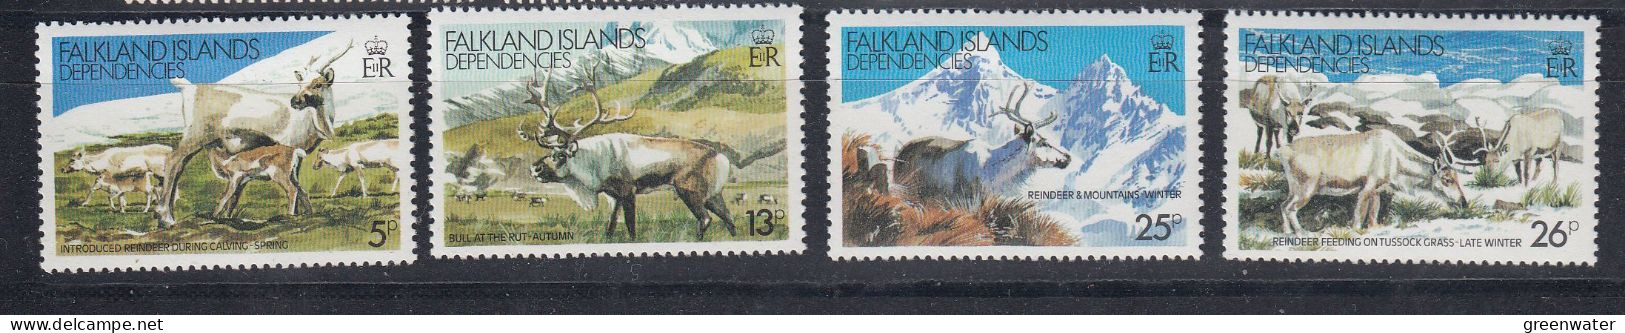 Falkland Islands Dependencies (FID) 1982 Reindeer 4v ** Mnh (59842) - Südgeorgien